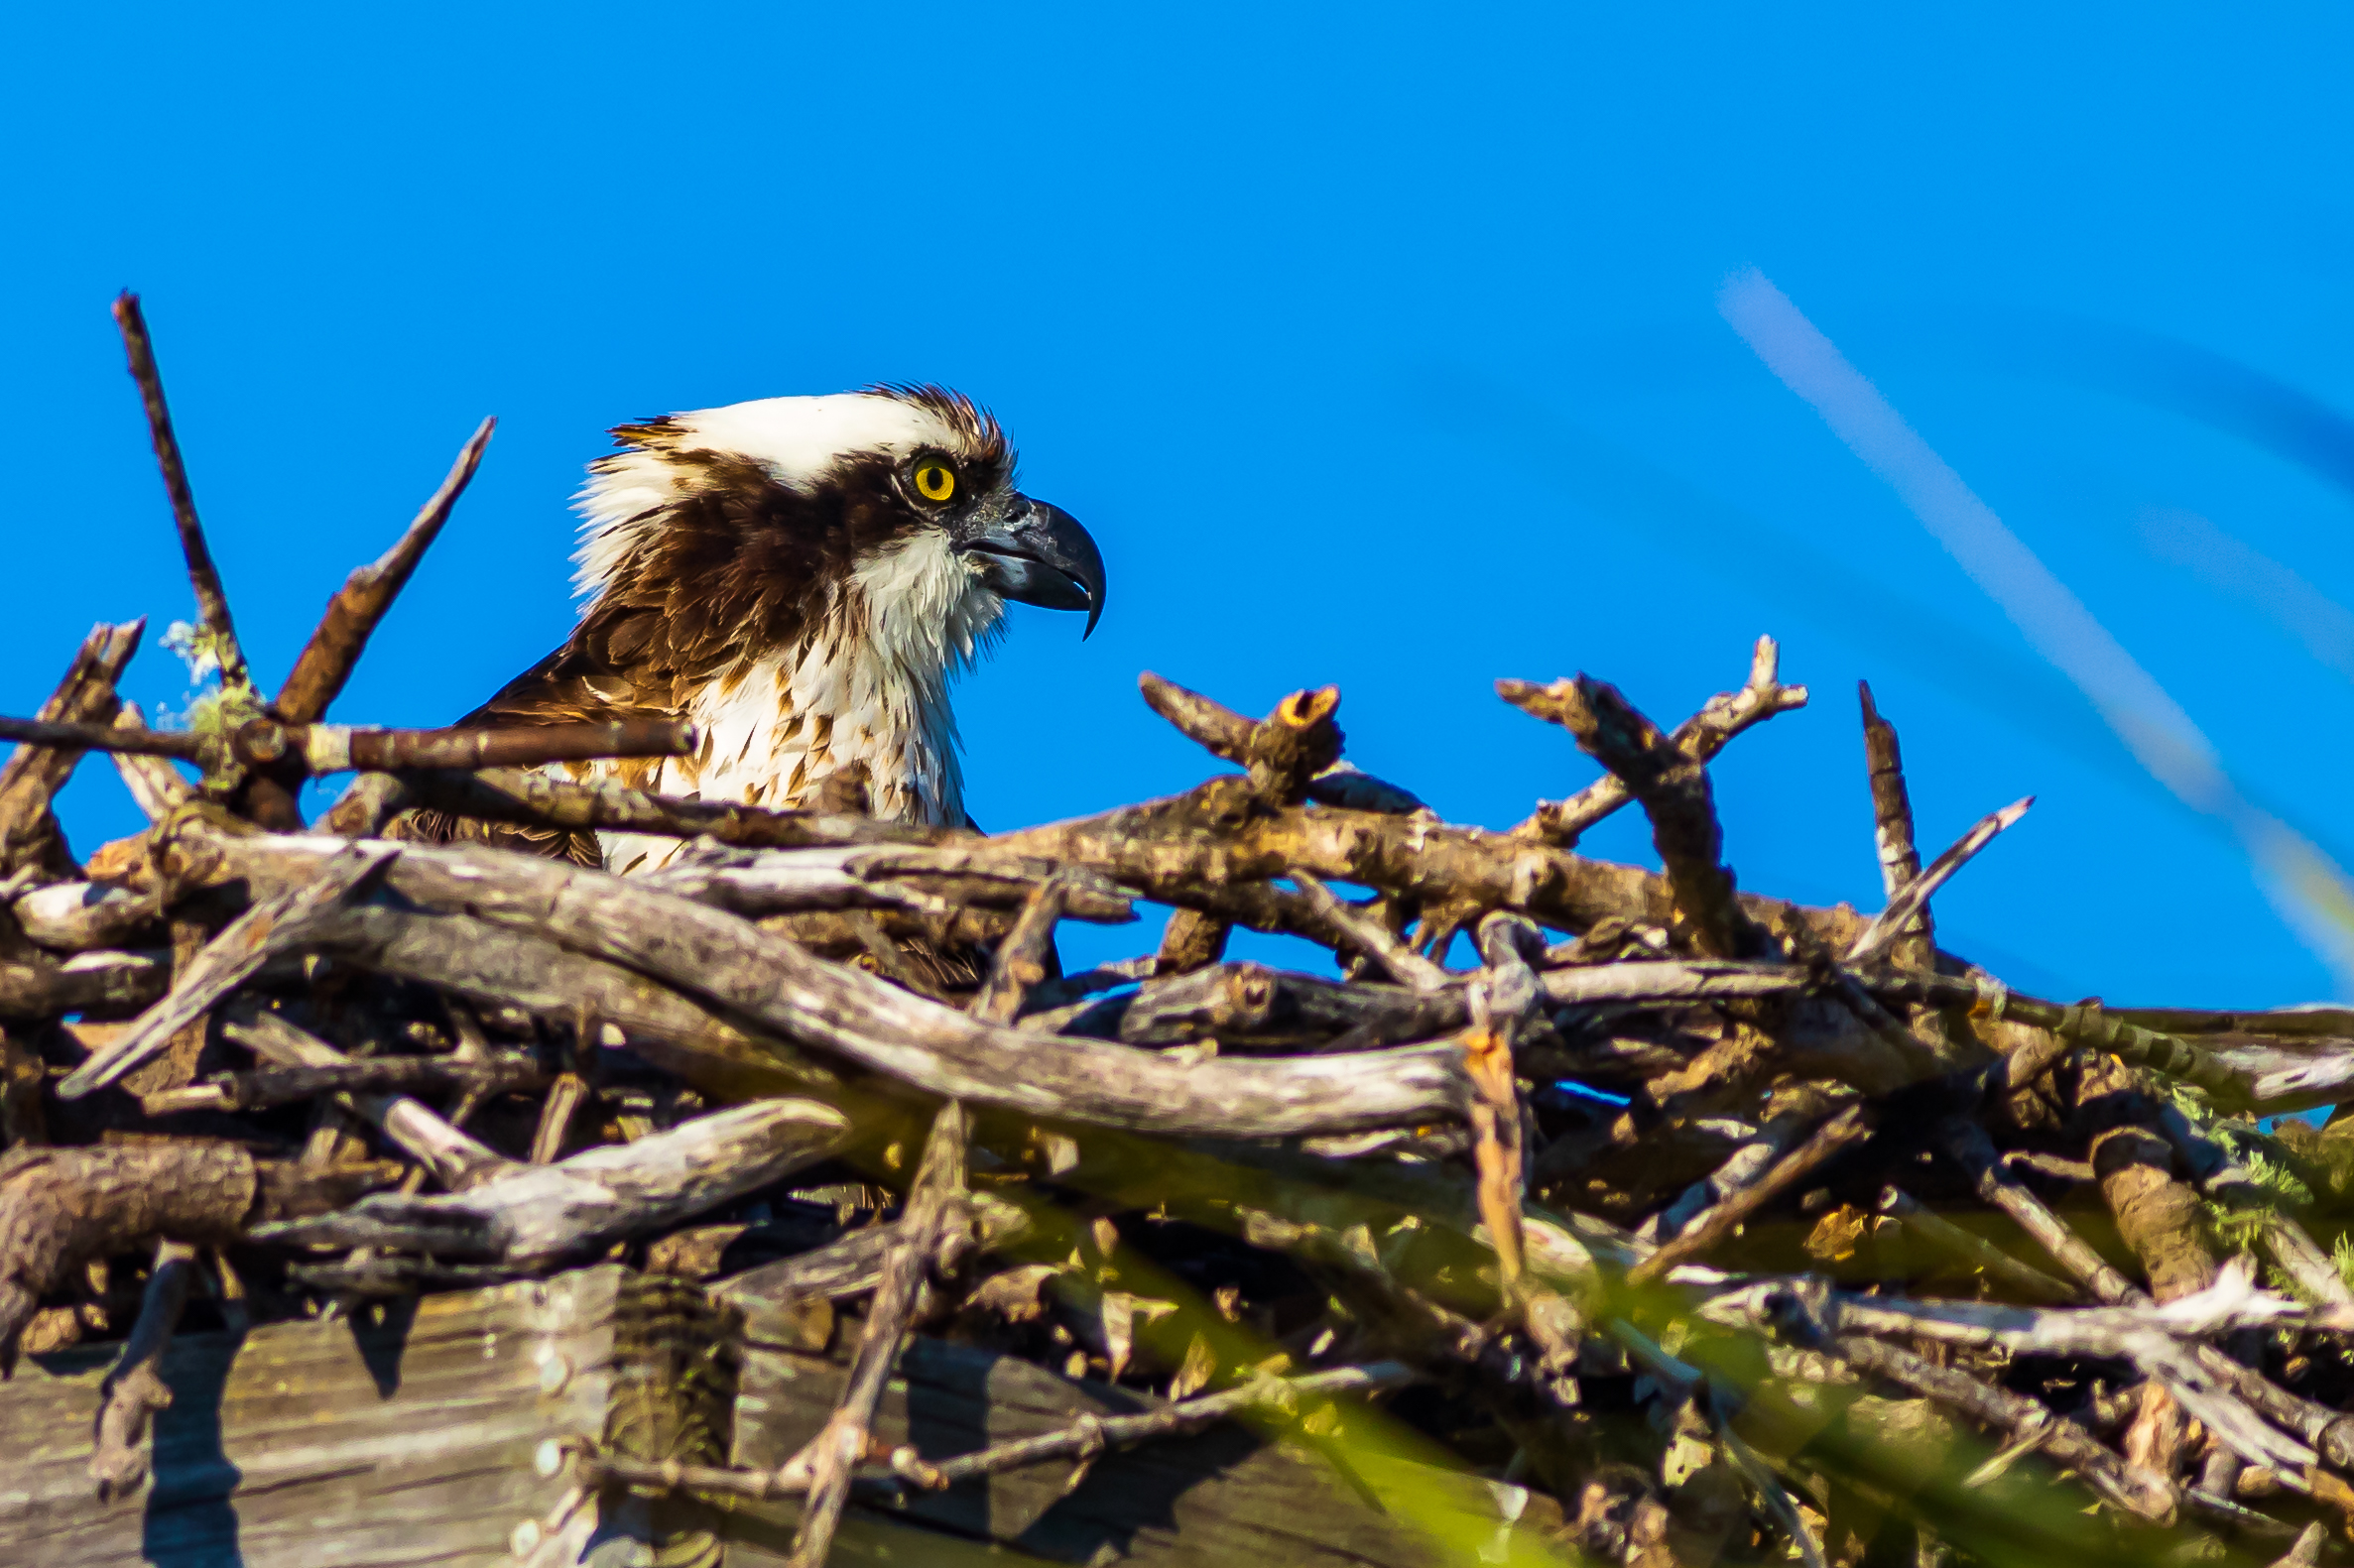 Osprey on the Nest